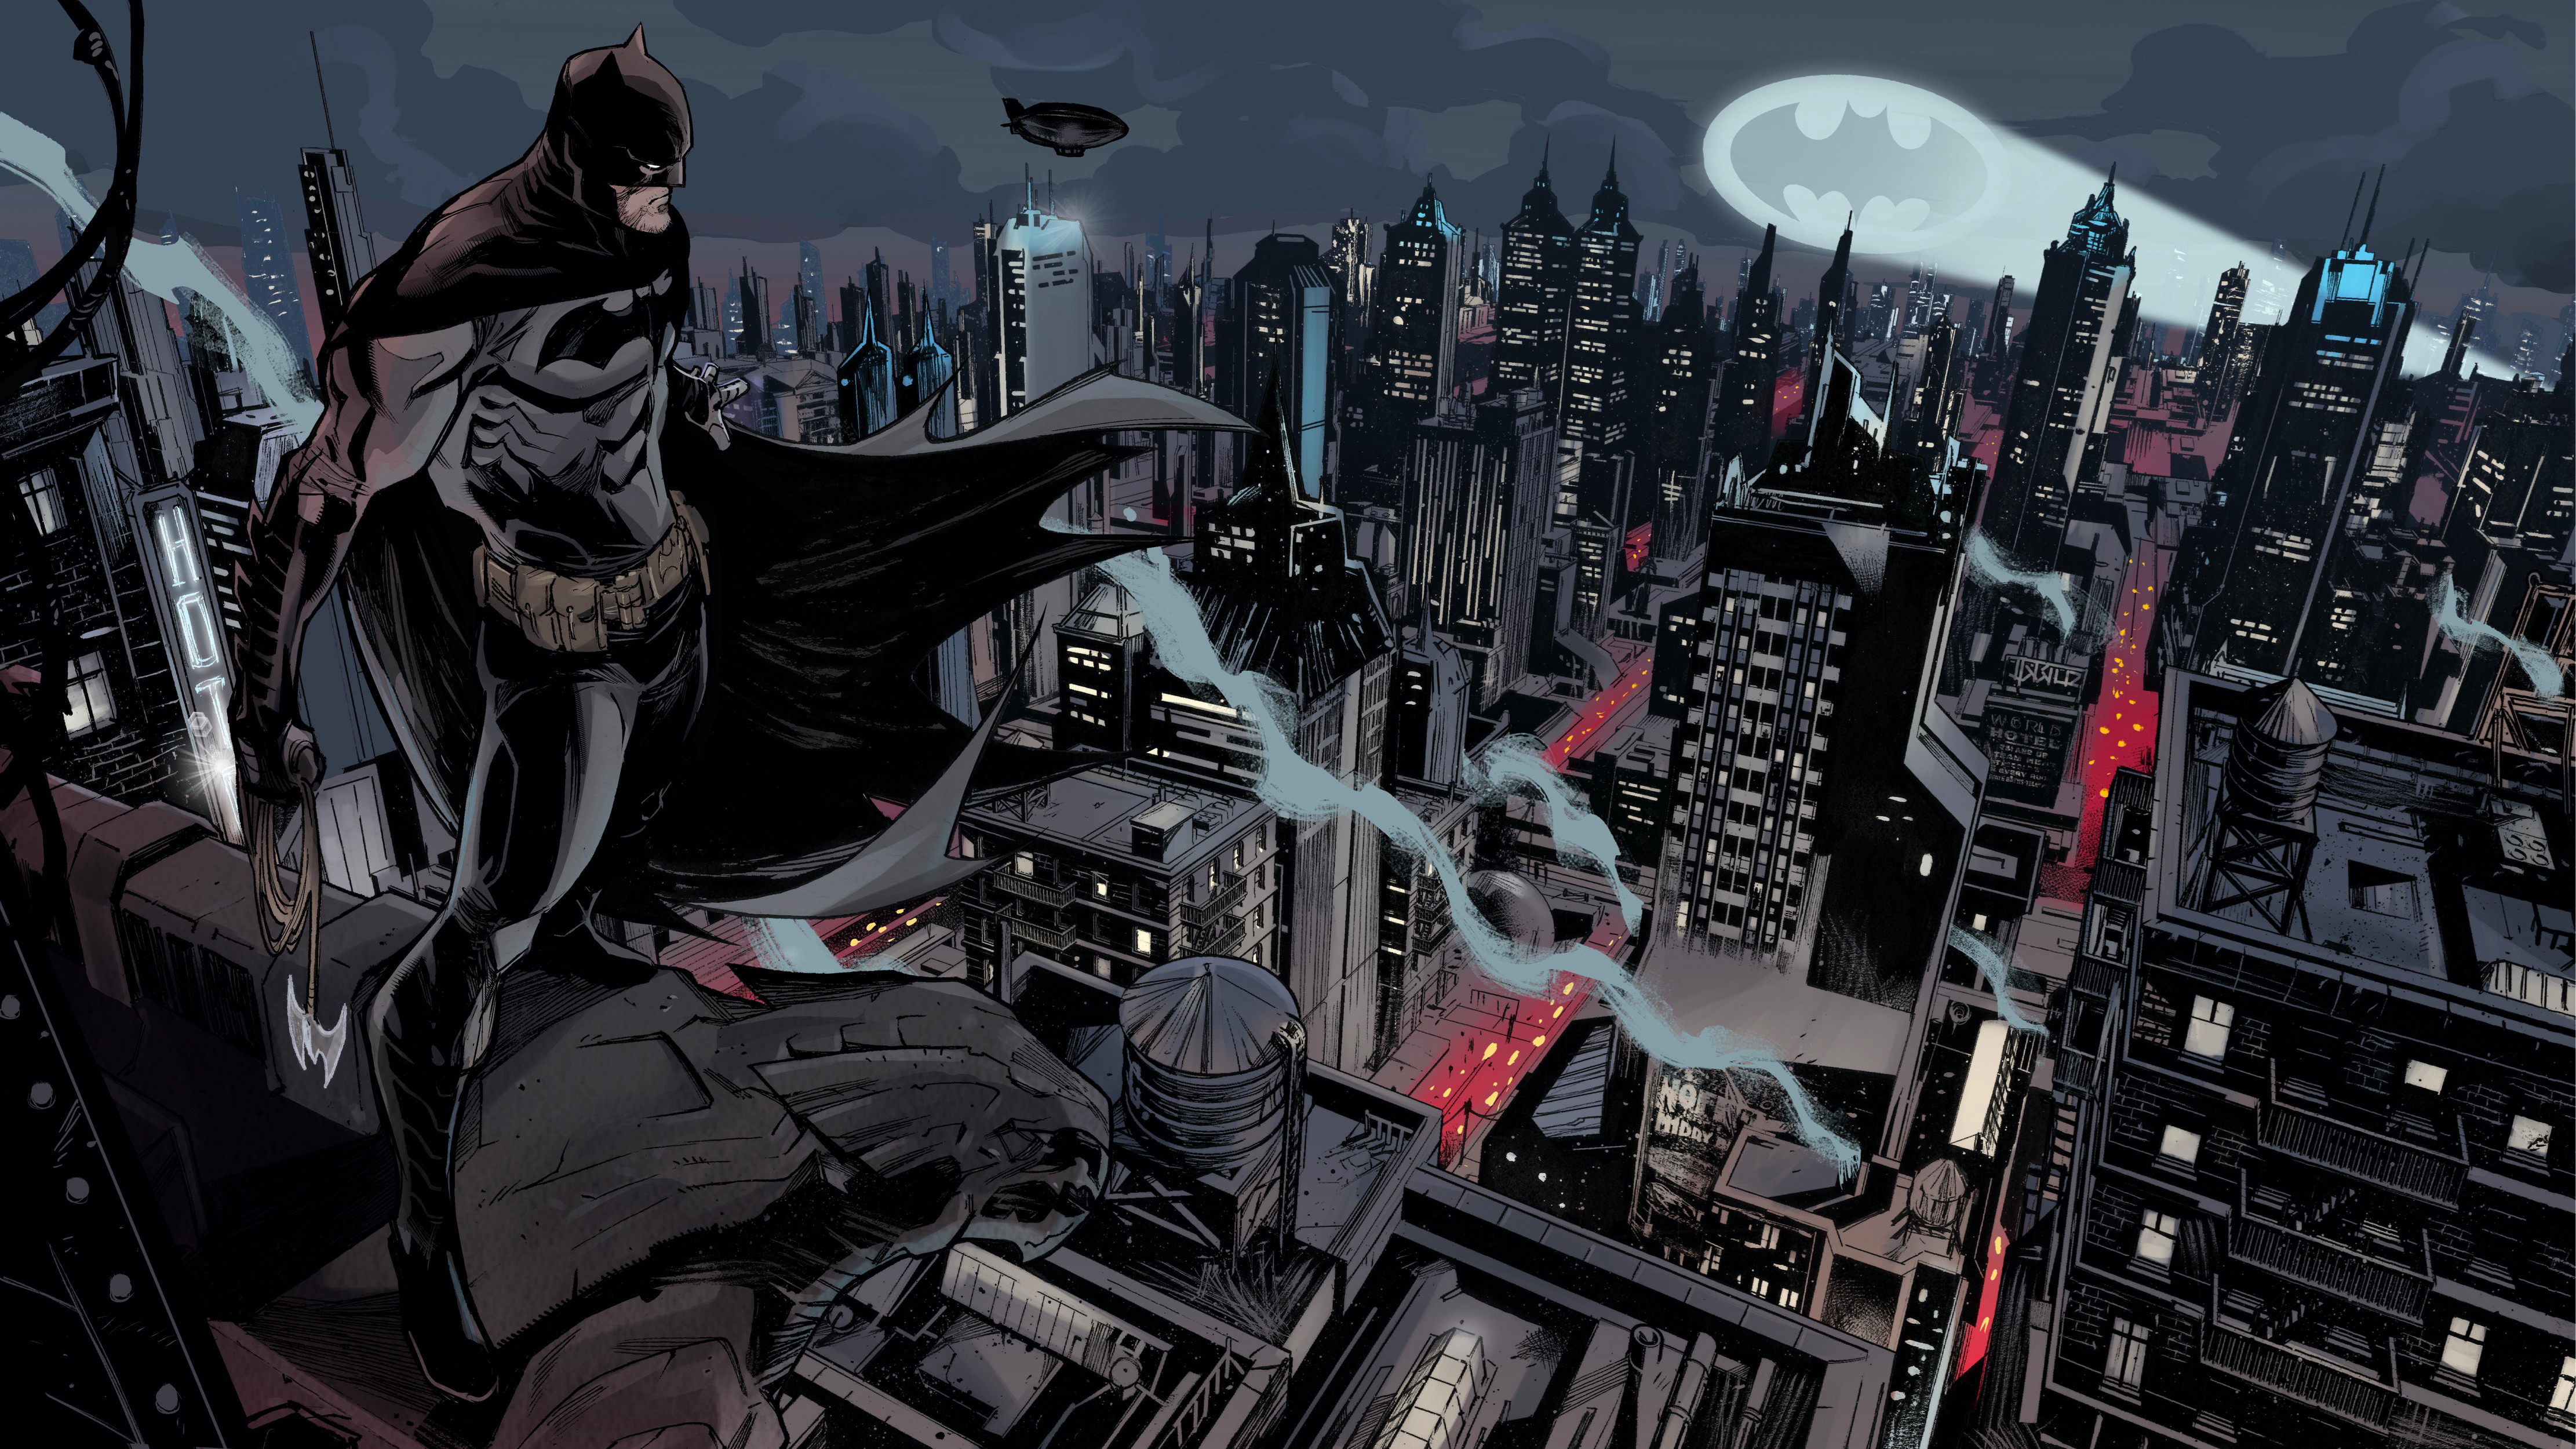 comics, batman, bat signal, dc comics, gotham city